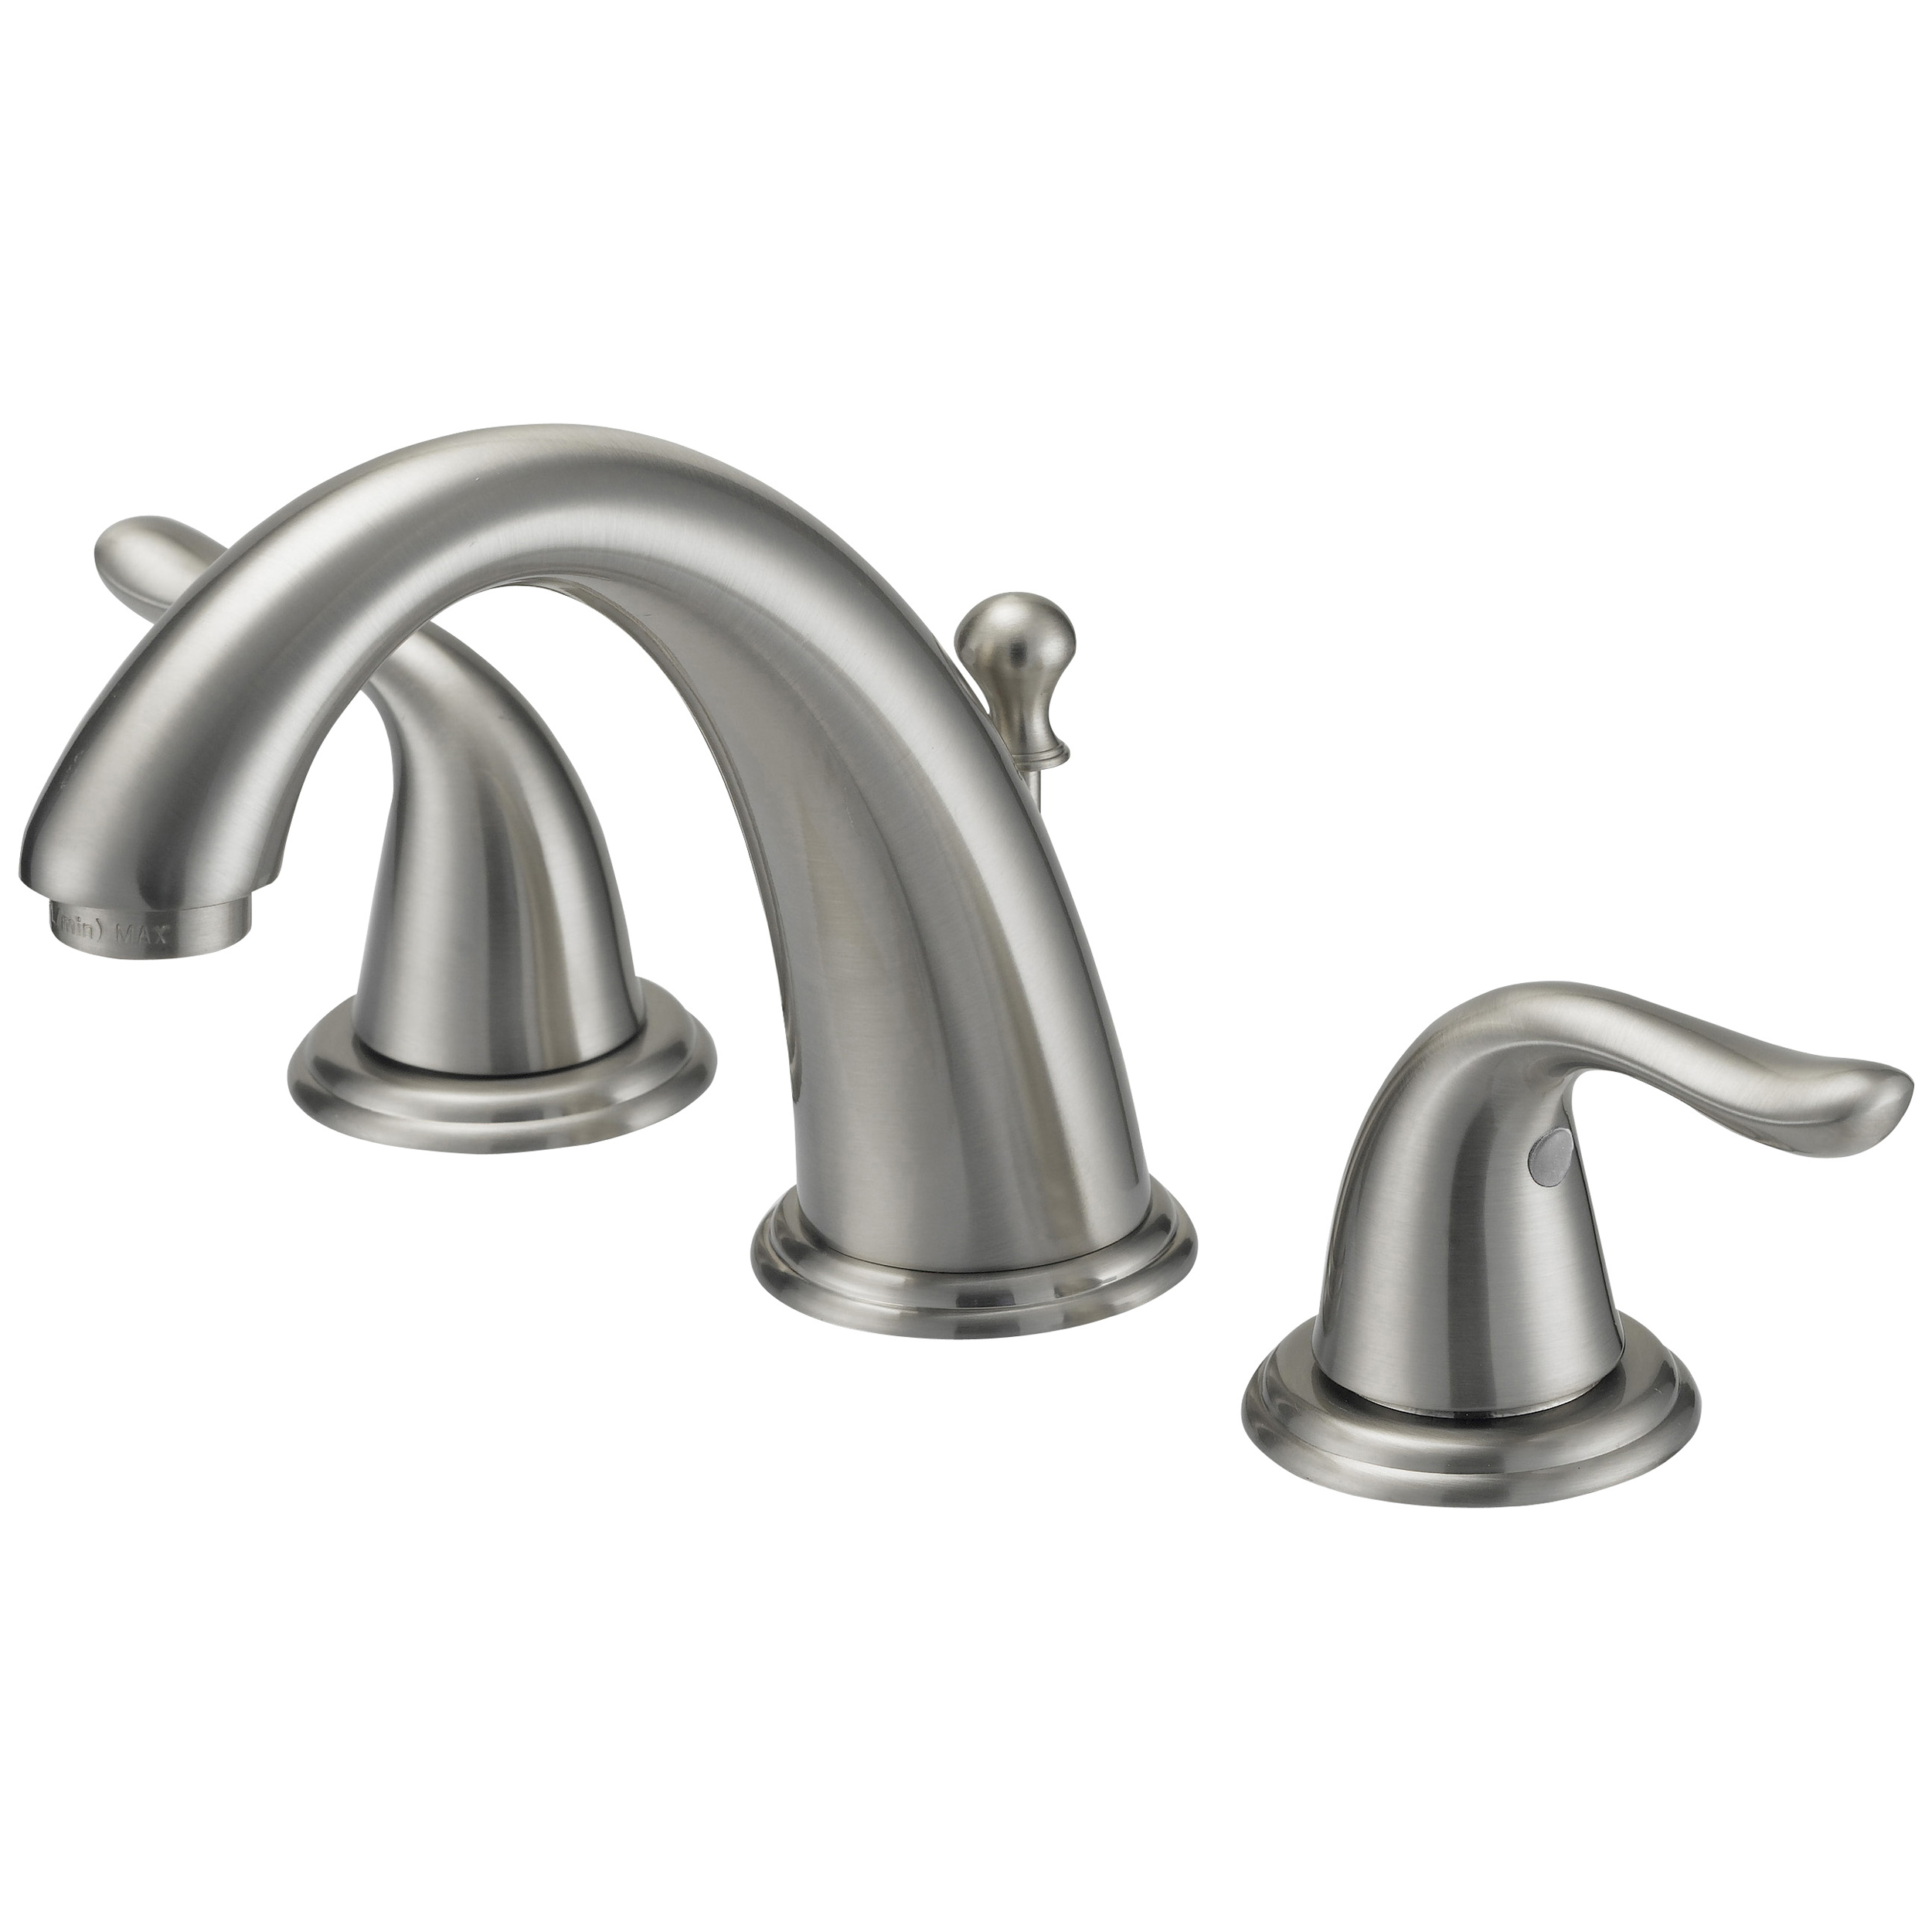 TQ-FW6B0000NP Lavatory Faucet, 1.2 gpm, 2-Faucet Handle, 3-Faucet Hole, Brass/Plastic/Zinc, Lever Handle